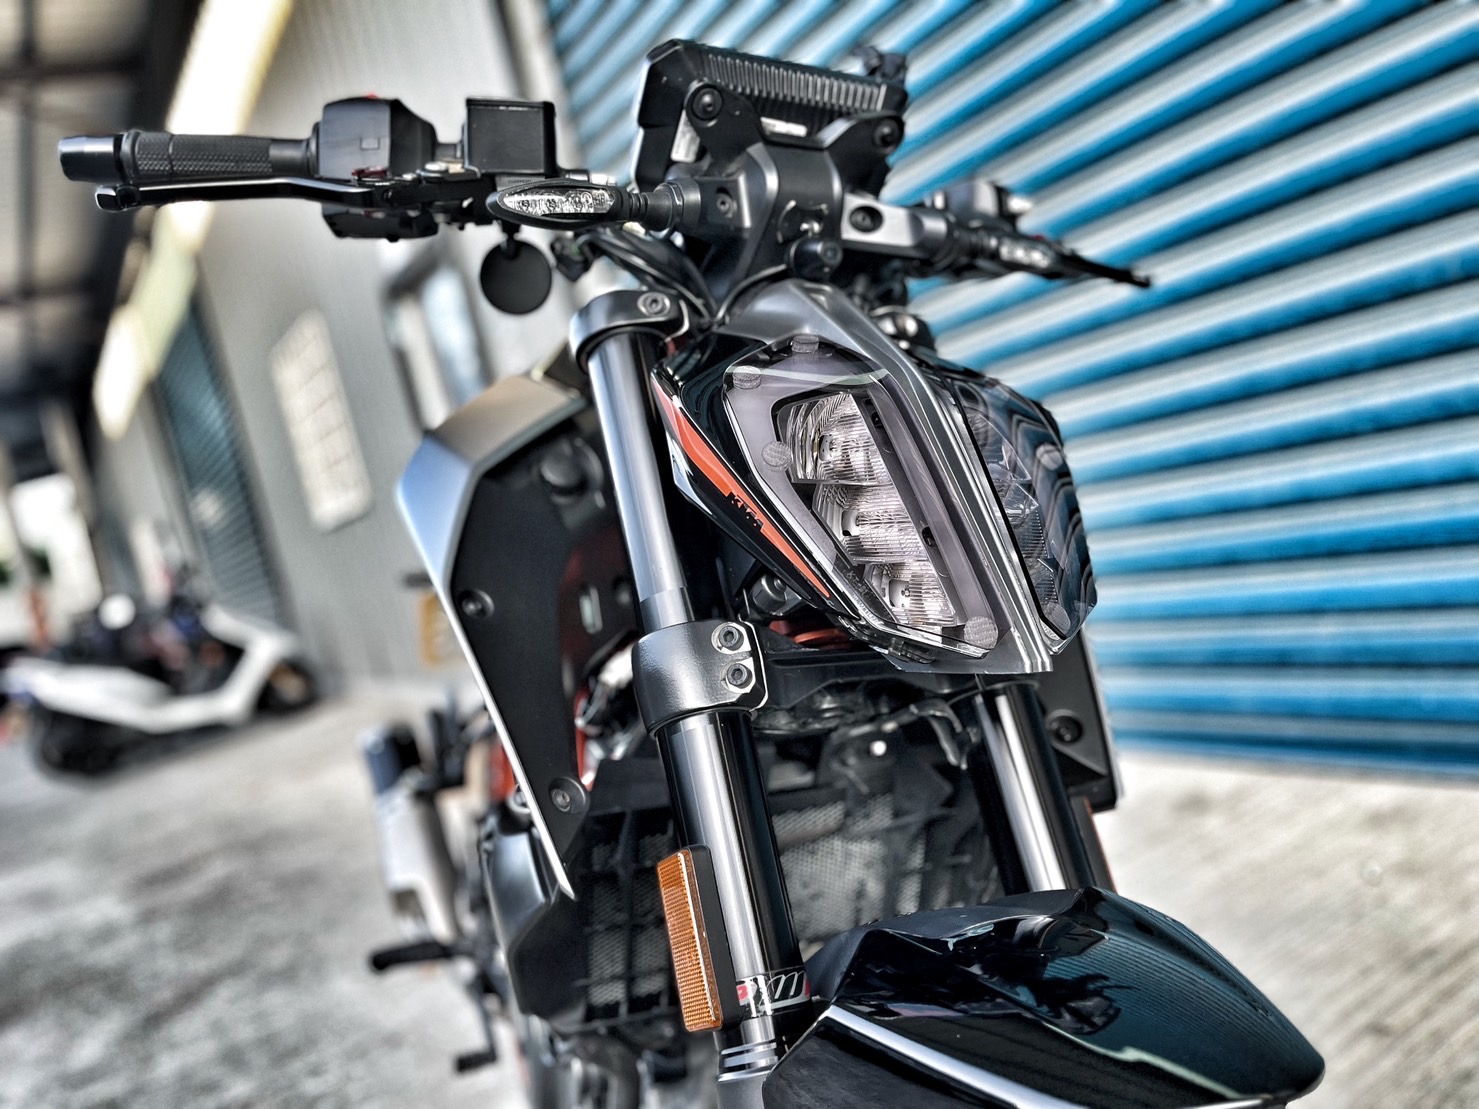 【小資族二手重機買賣】KTM 390DUKE - 「Webike-摩托車市」 黑色系 原廠保固 無摔無事故 小資族二手重機買賣